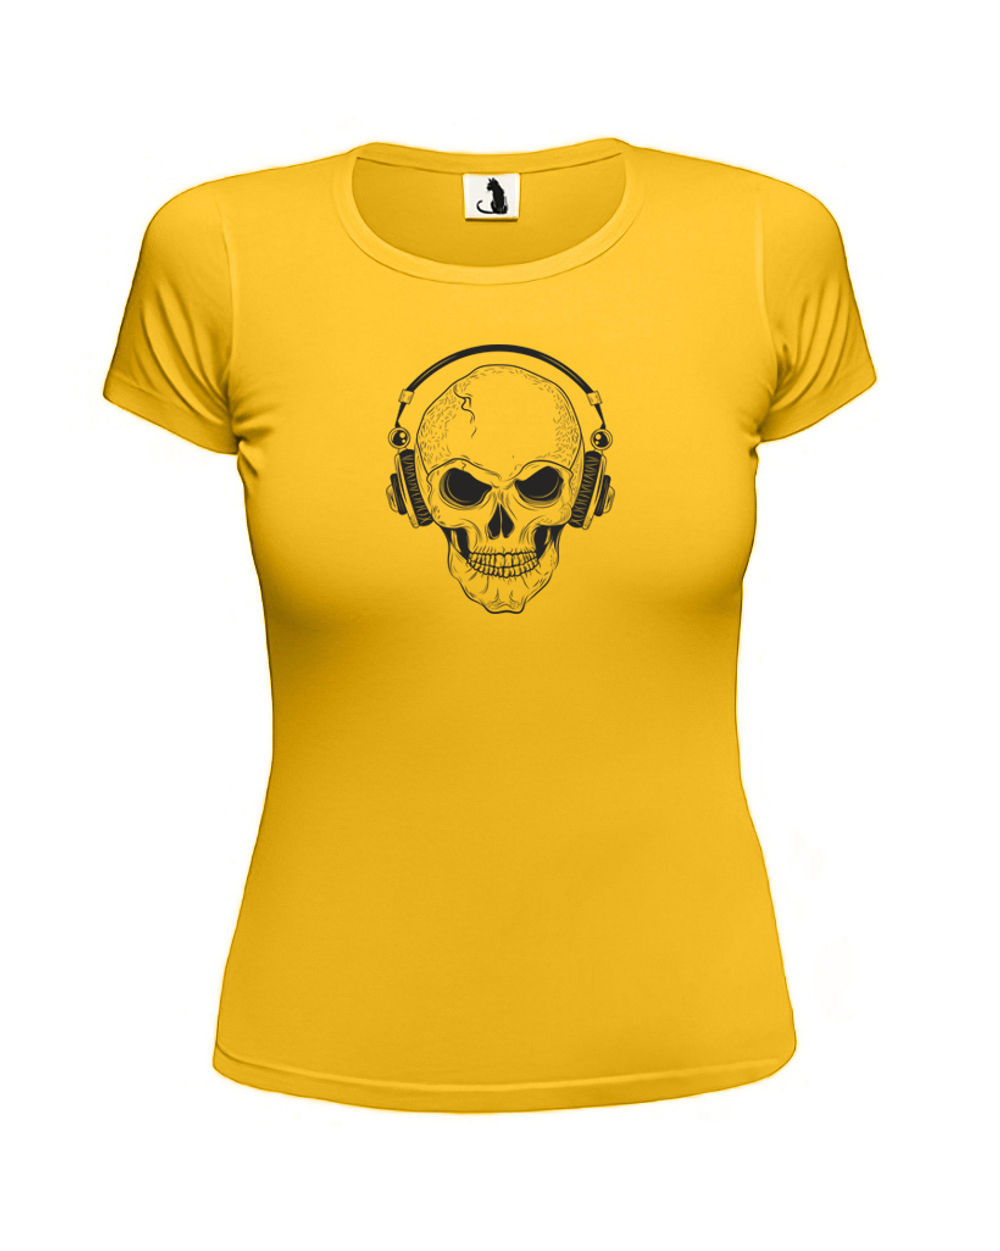 Футболка Череп в наушниках женская приталенная желтая с черным рисунком